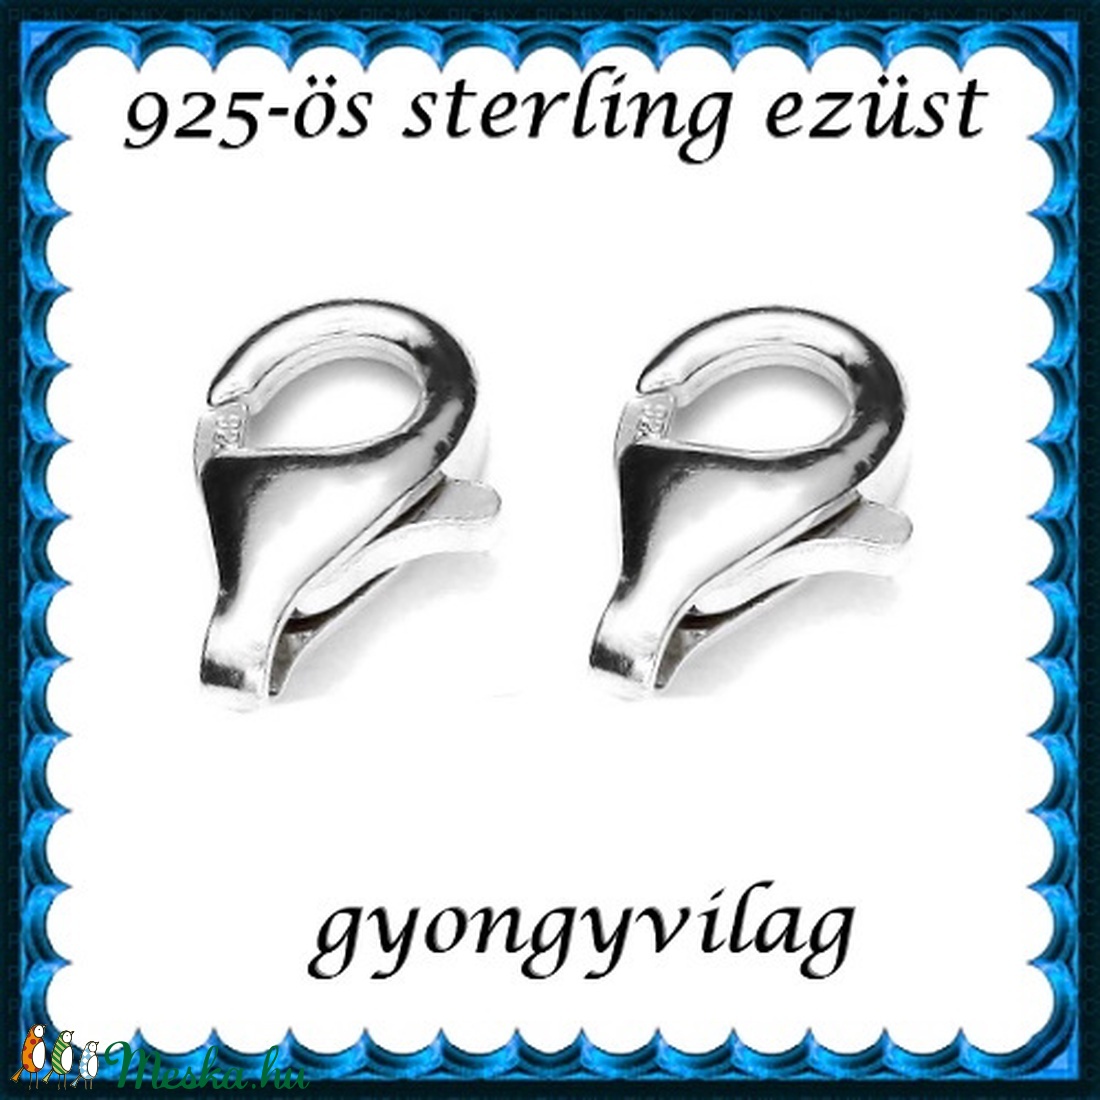 925-ös ezüst 1soros lánckapocs ELK 1s 39-8 2db/csomag - gyöngy, ékszerkellék - egyéb alkatrész - Meska.hu